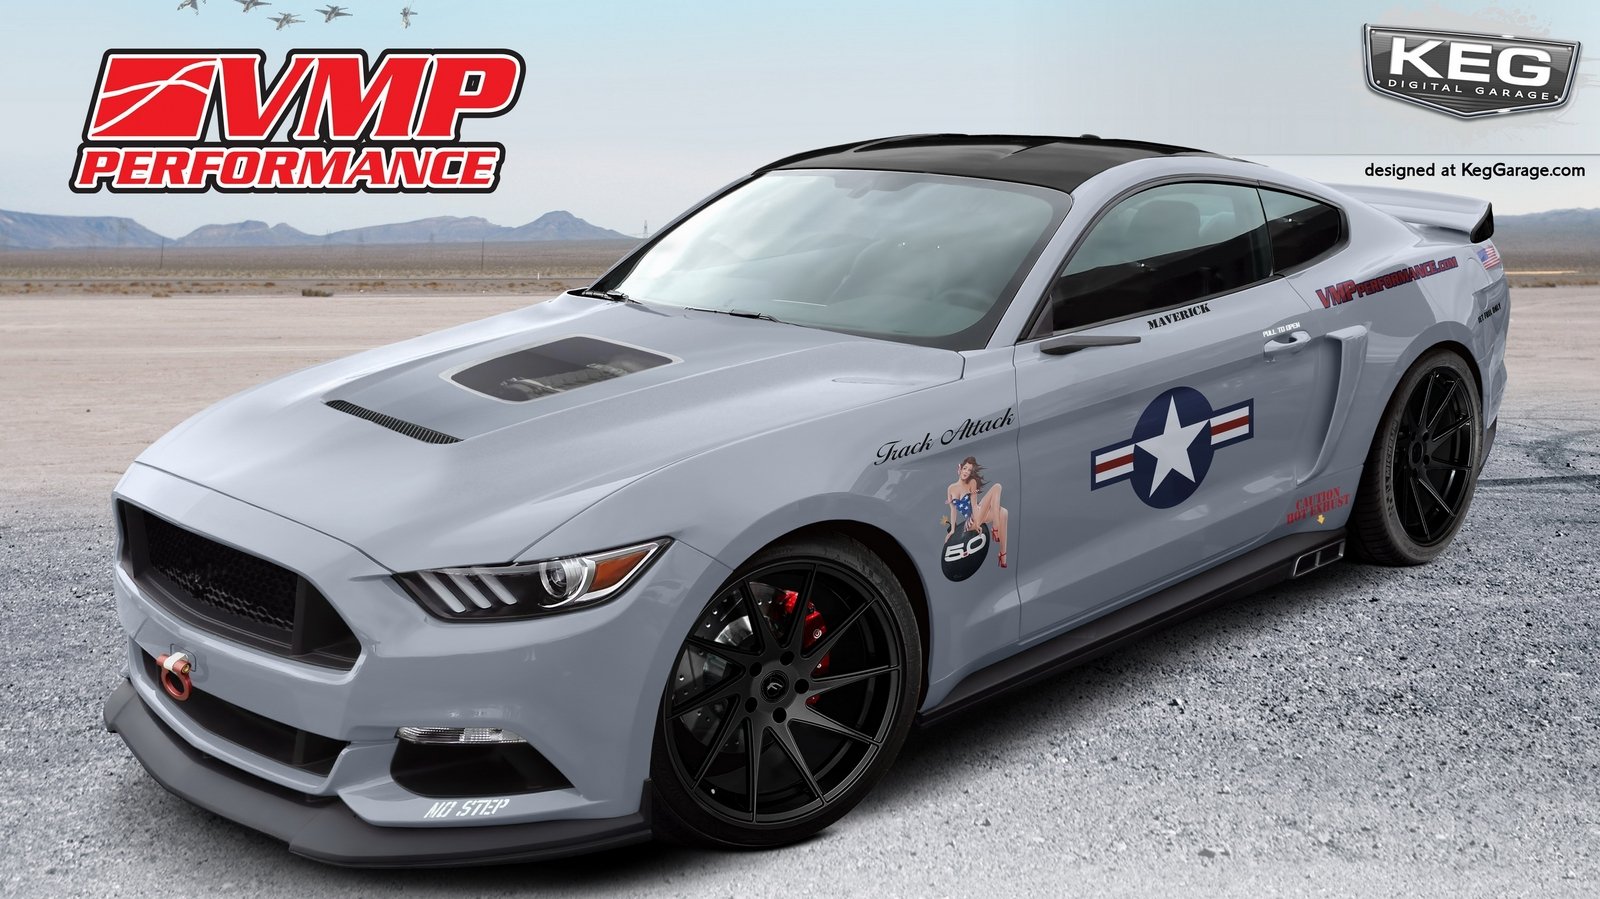 Vmp Track Attack Mustang - HD Wallpaper 